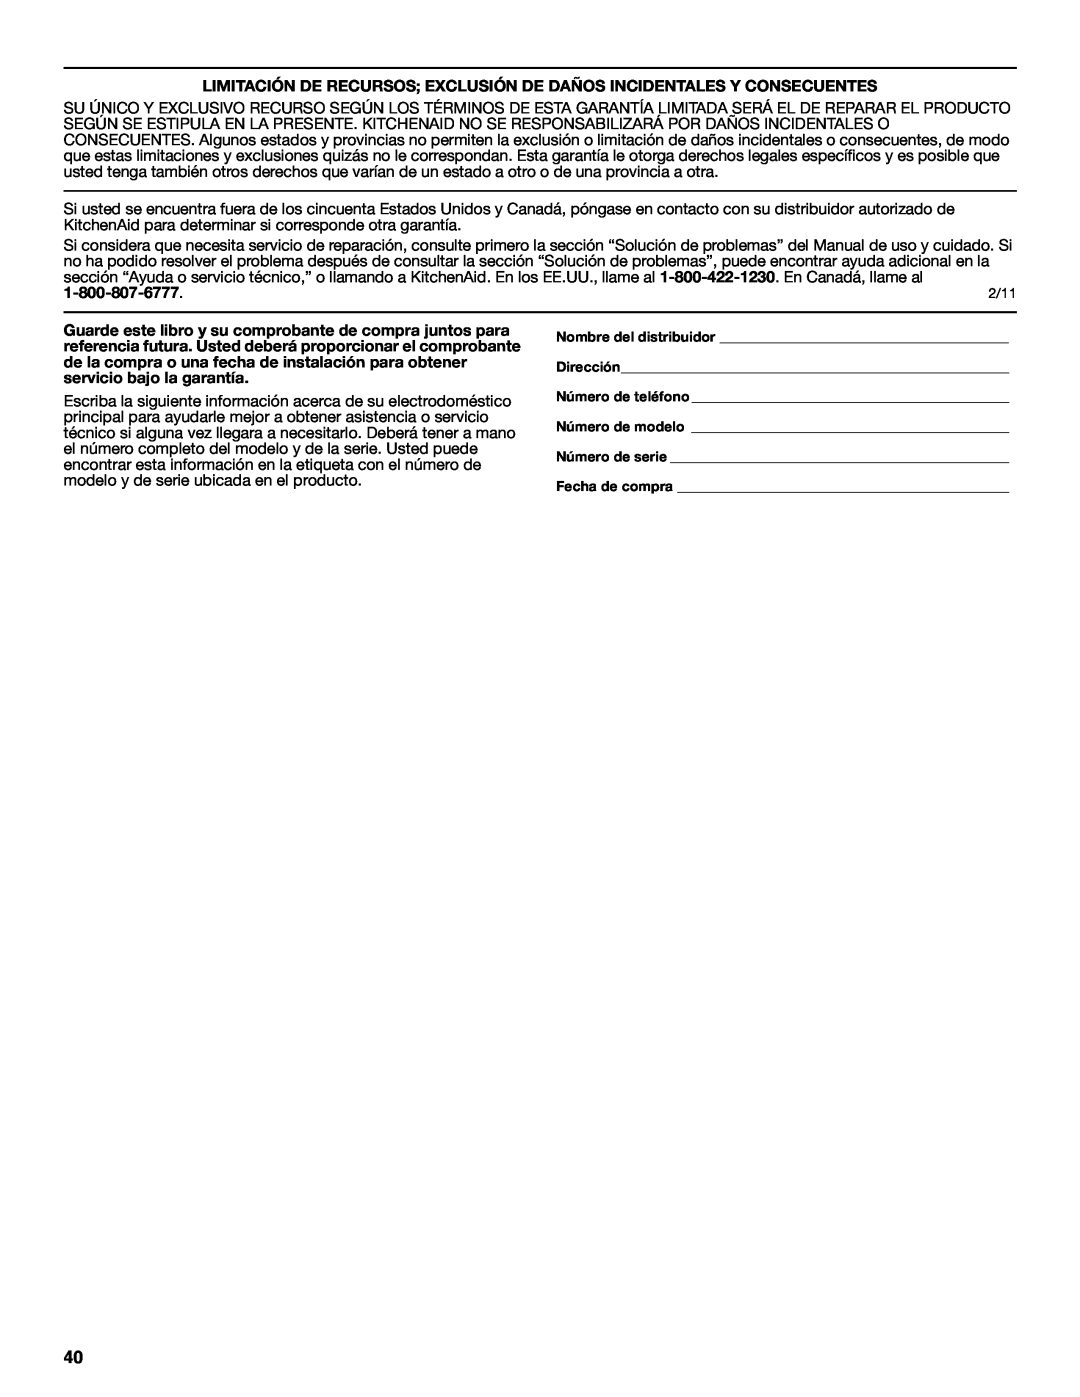 KitchenAid W10515677C manual Limitación De Recursos Exclusión De Daños Incidentales Y Consecuentes 